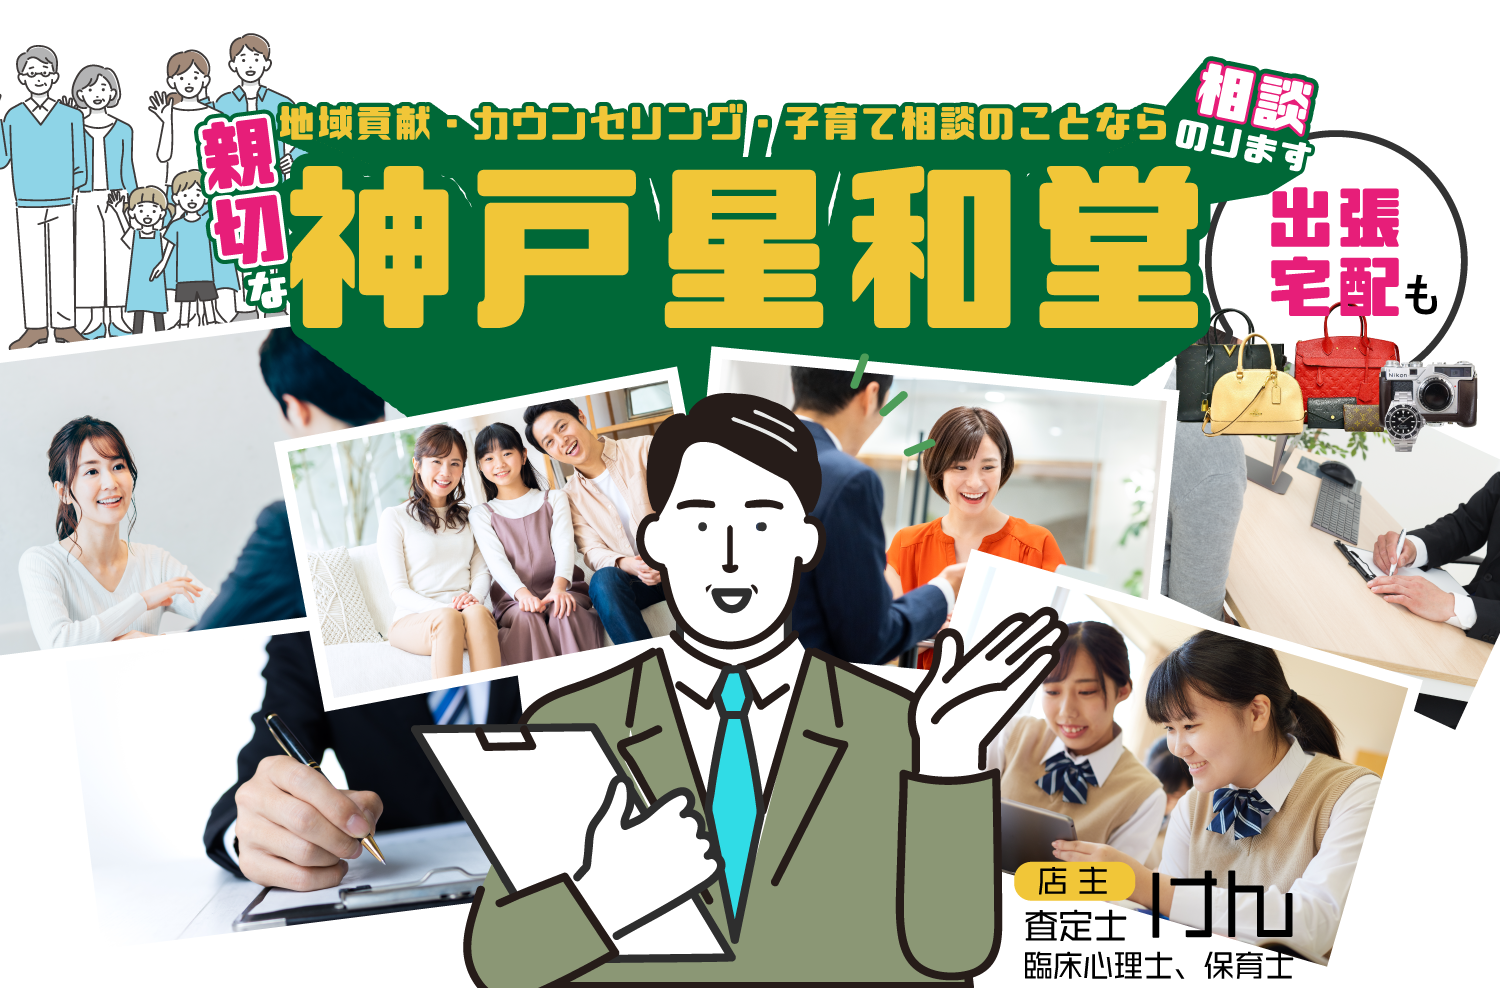 教育相談、子育てのお悩みなどのカウンセリングなら神戸市北区の『神戸星和堂』。高齢者の方もお気軽にどうぞ。